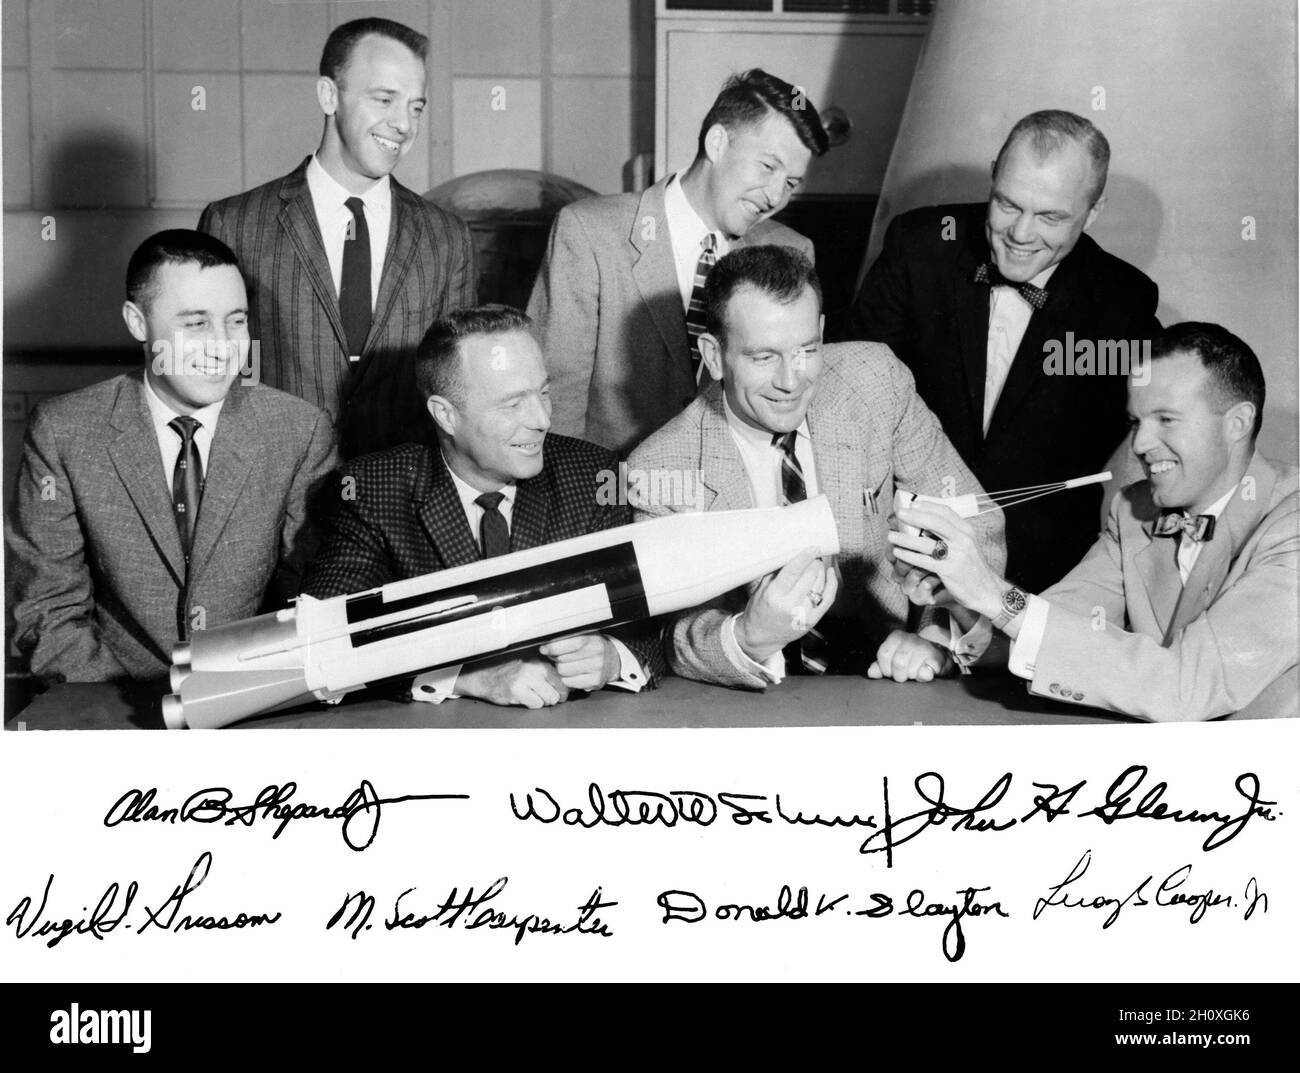 (1959) --- die ursprünglichen Merkur-Astronauten sind um einen Tisch herum abgebildet und bewundern ein Atlas-Modell. Stehend, von links nach rechts, sind Alan B. Shepard Jr., Walter M. Schirra Jr. und John H. Glenn Jr.; sitzend, von links nach rechts Virgil I. Grissom, M. Scott Karpenter, Donald Slayton und L. Gordon Cooper Jr. Stockfoto